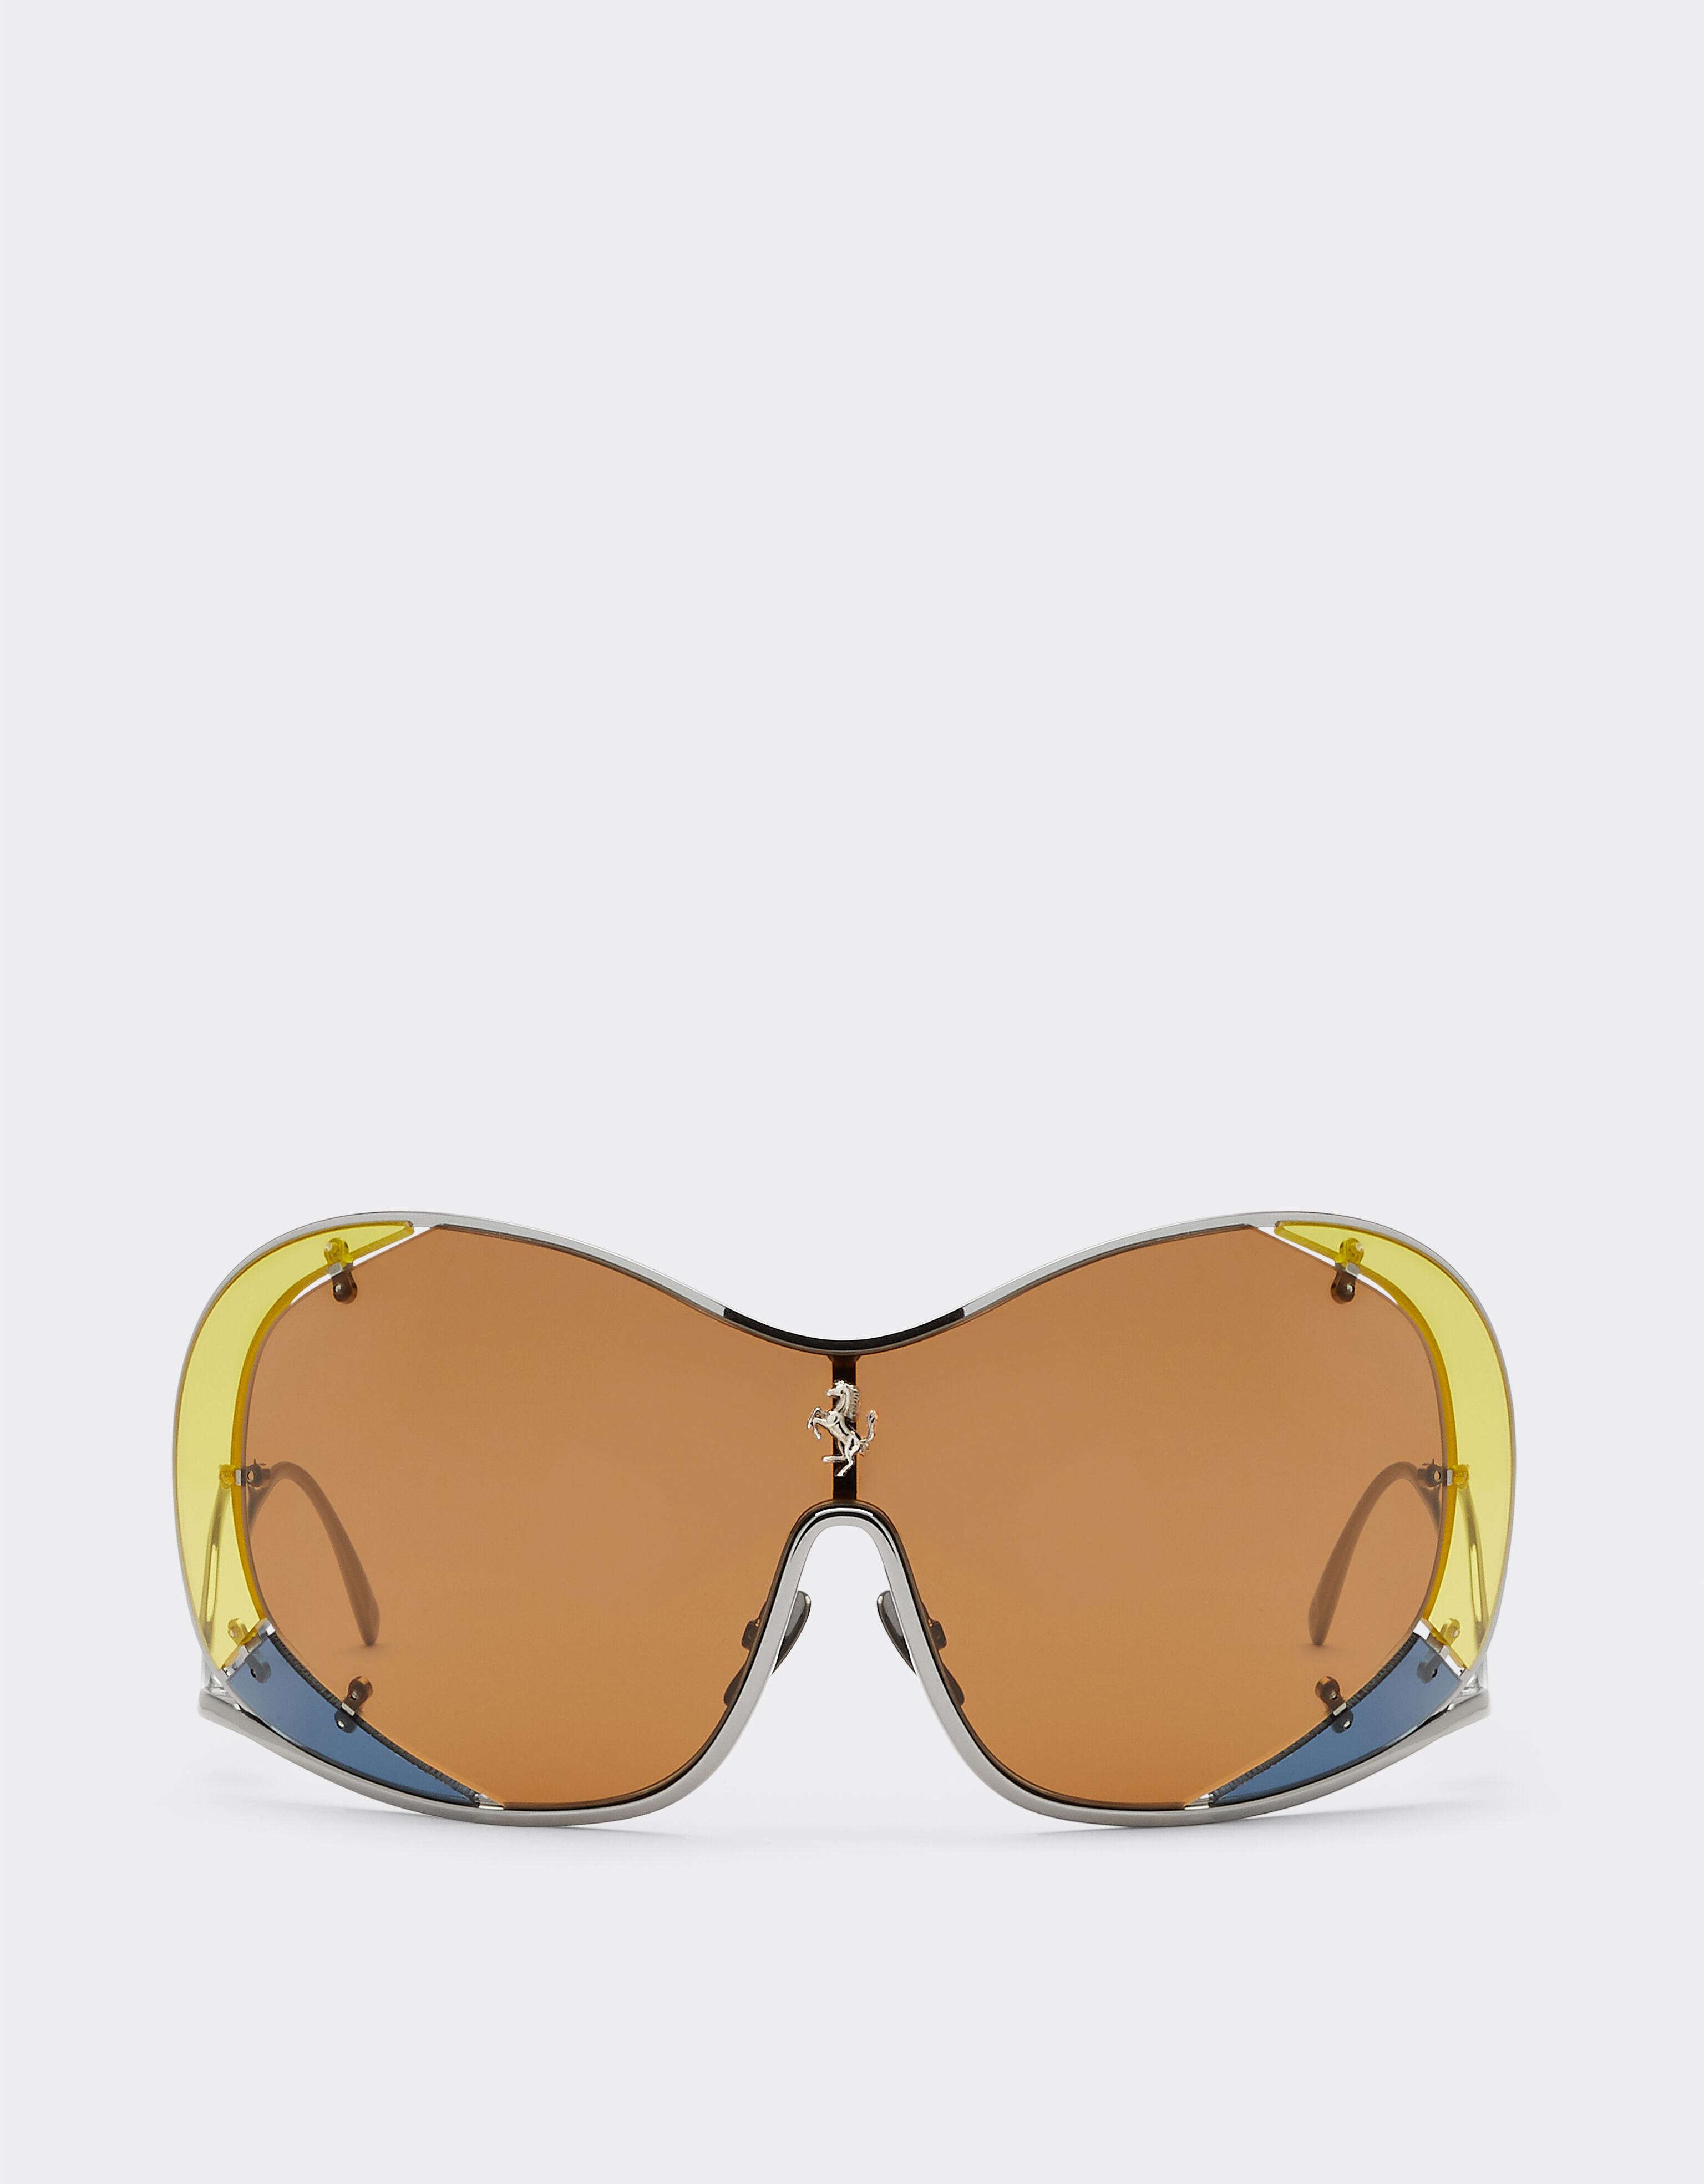 Ferrari Ferrari sunglasses with brown lenses Silver F1248f